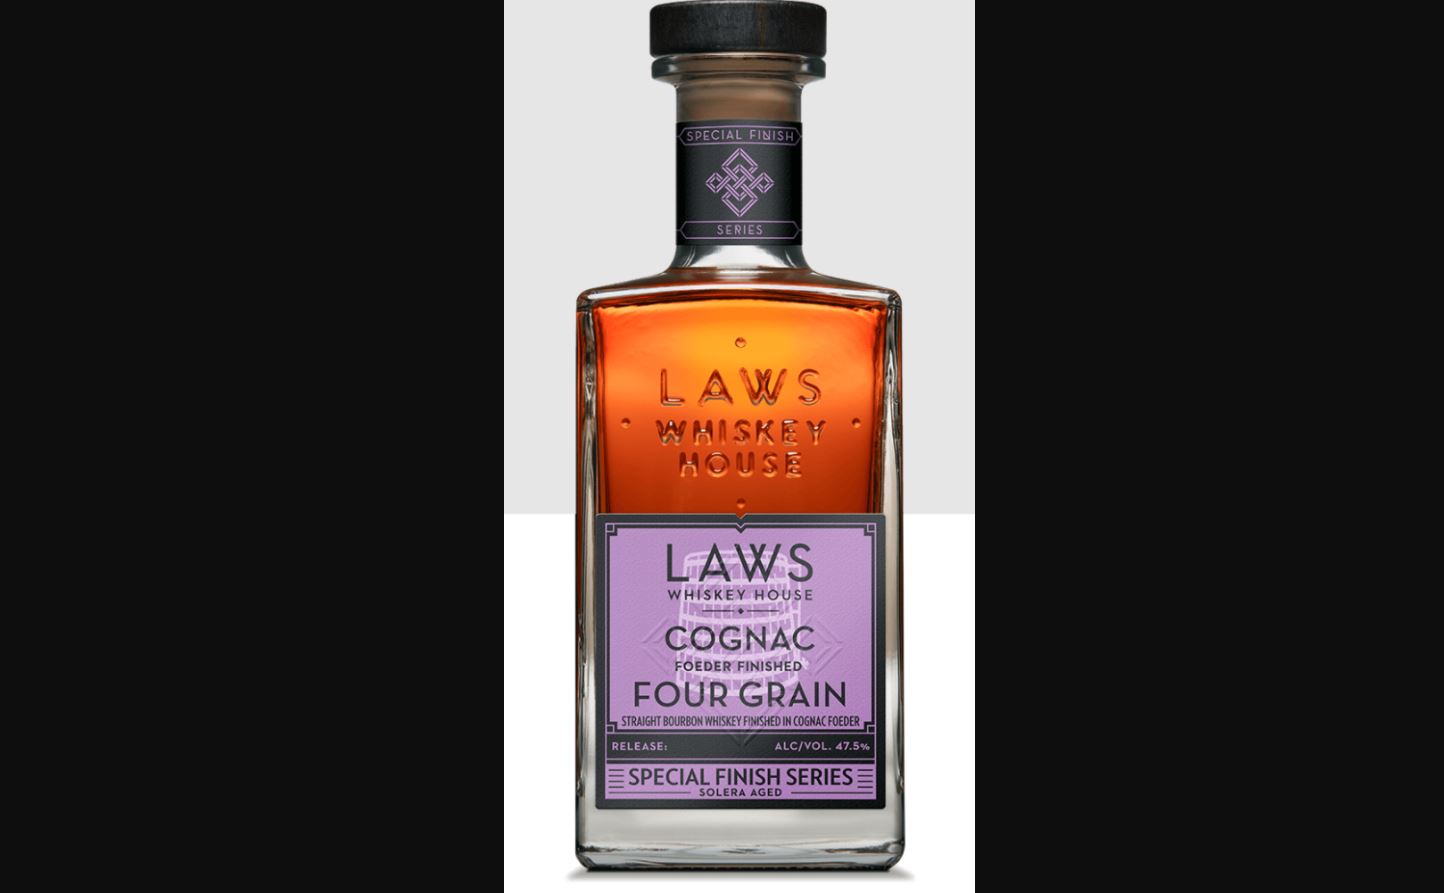 Laws Cognac Finished Four Grain